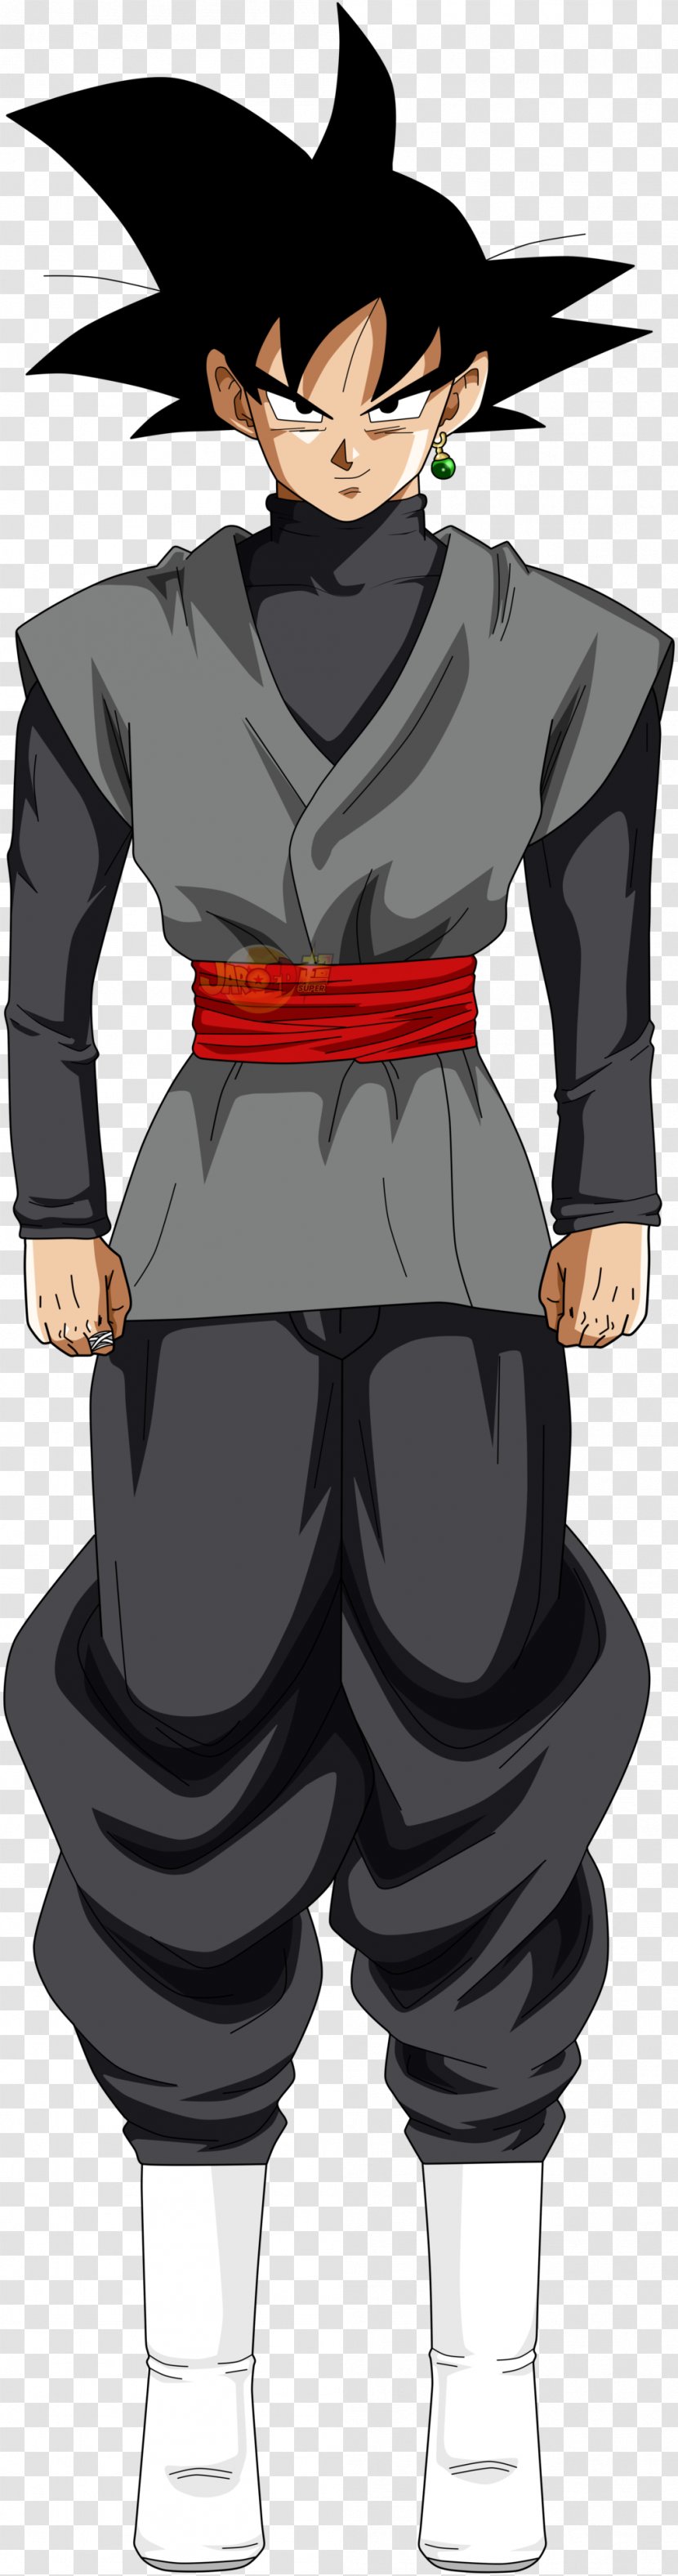 Goku Black Gohan Trunks Super Saiyan - Cartoon Transparent PNG